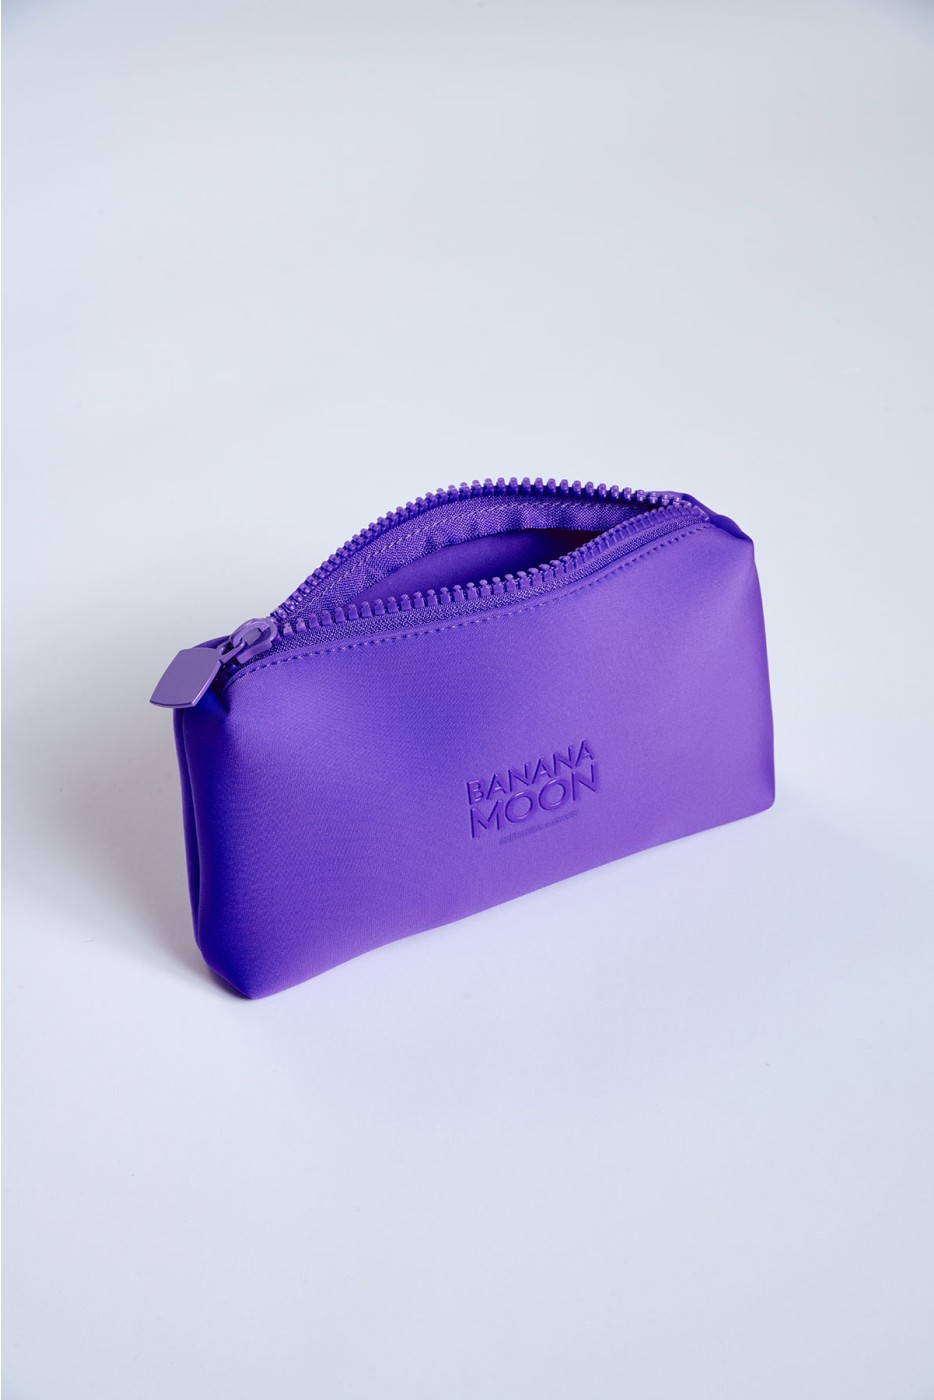 Pochette néoprène violette Neon Pouch